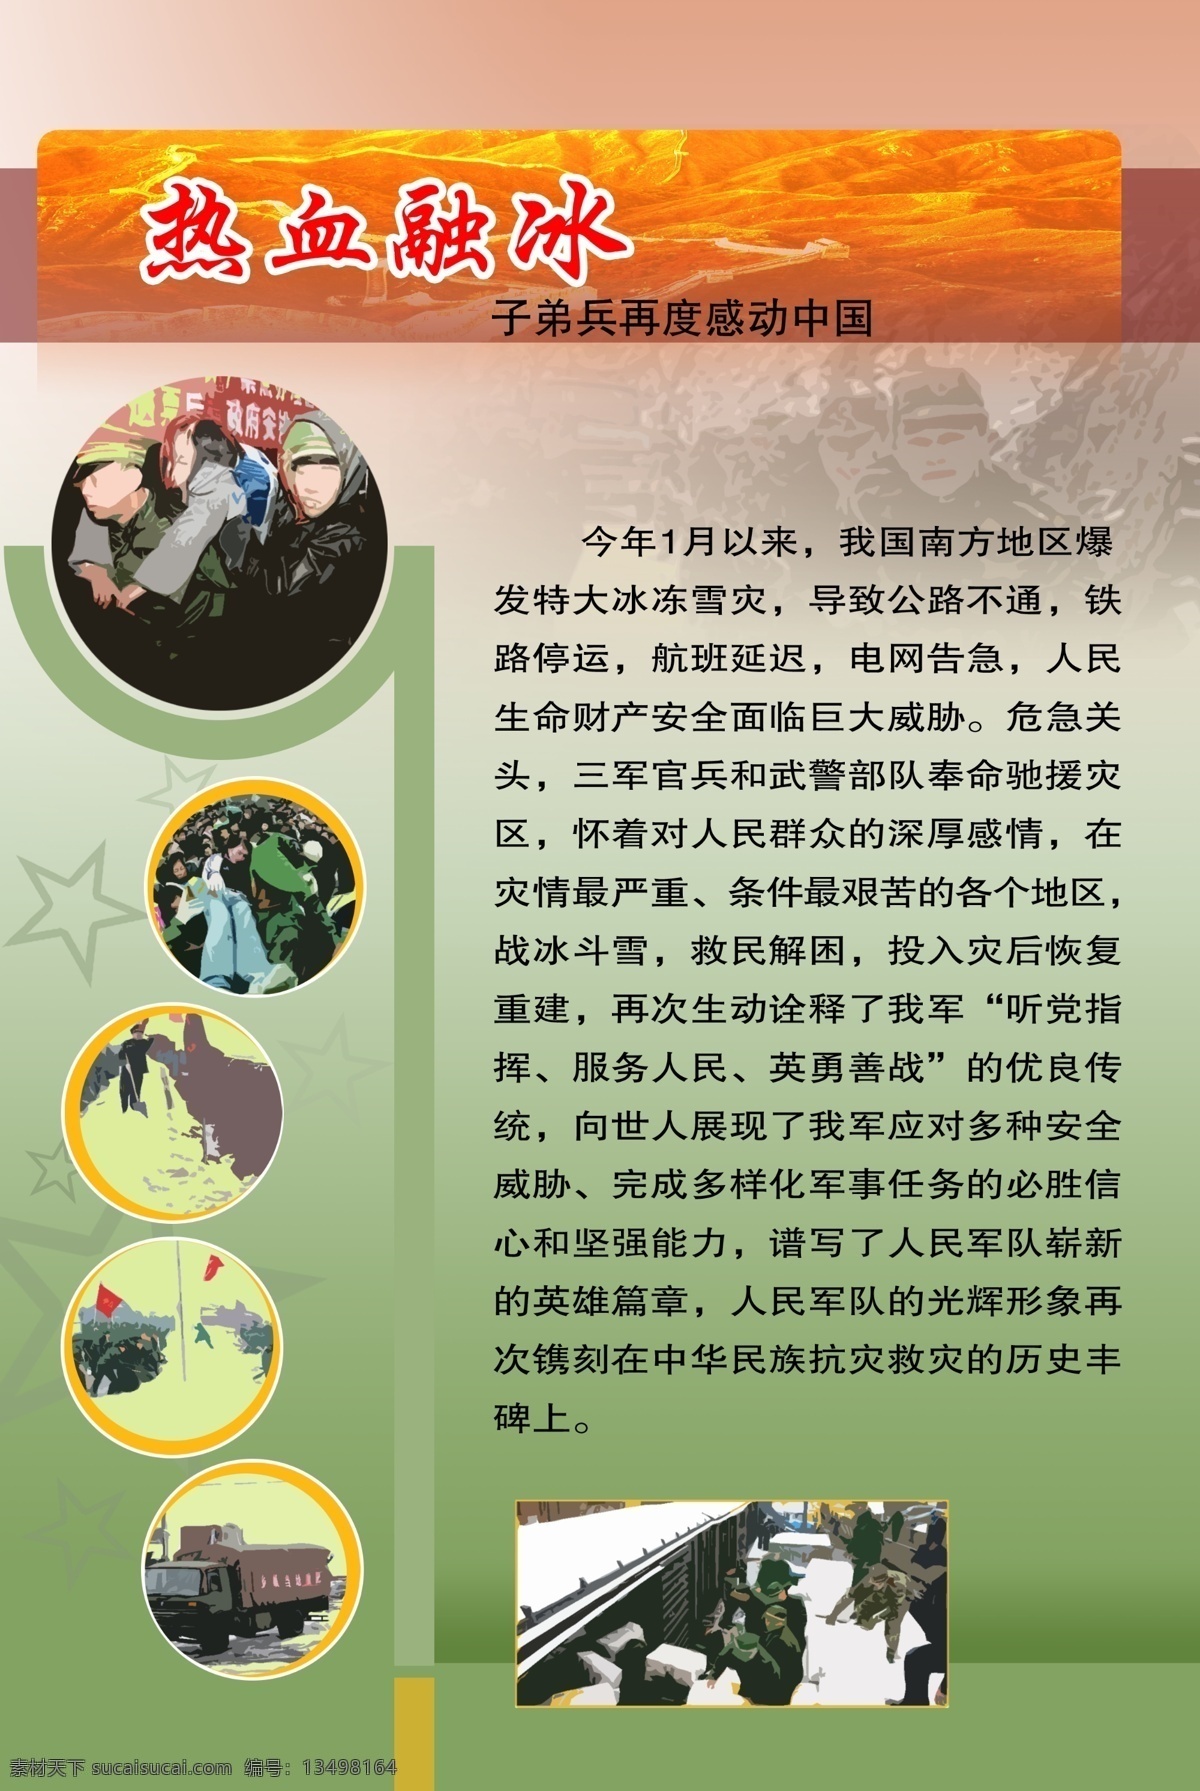 感动 中国 设计图 感动中国 热血融冰 设计图版 展板模板 广告设计模板 源文件